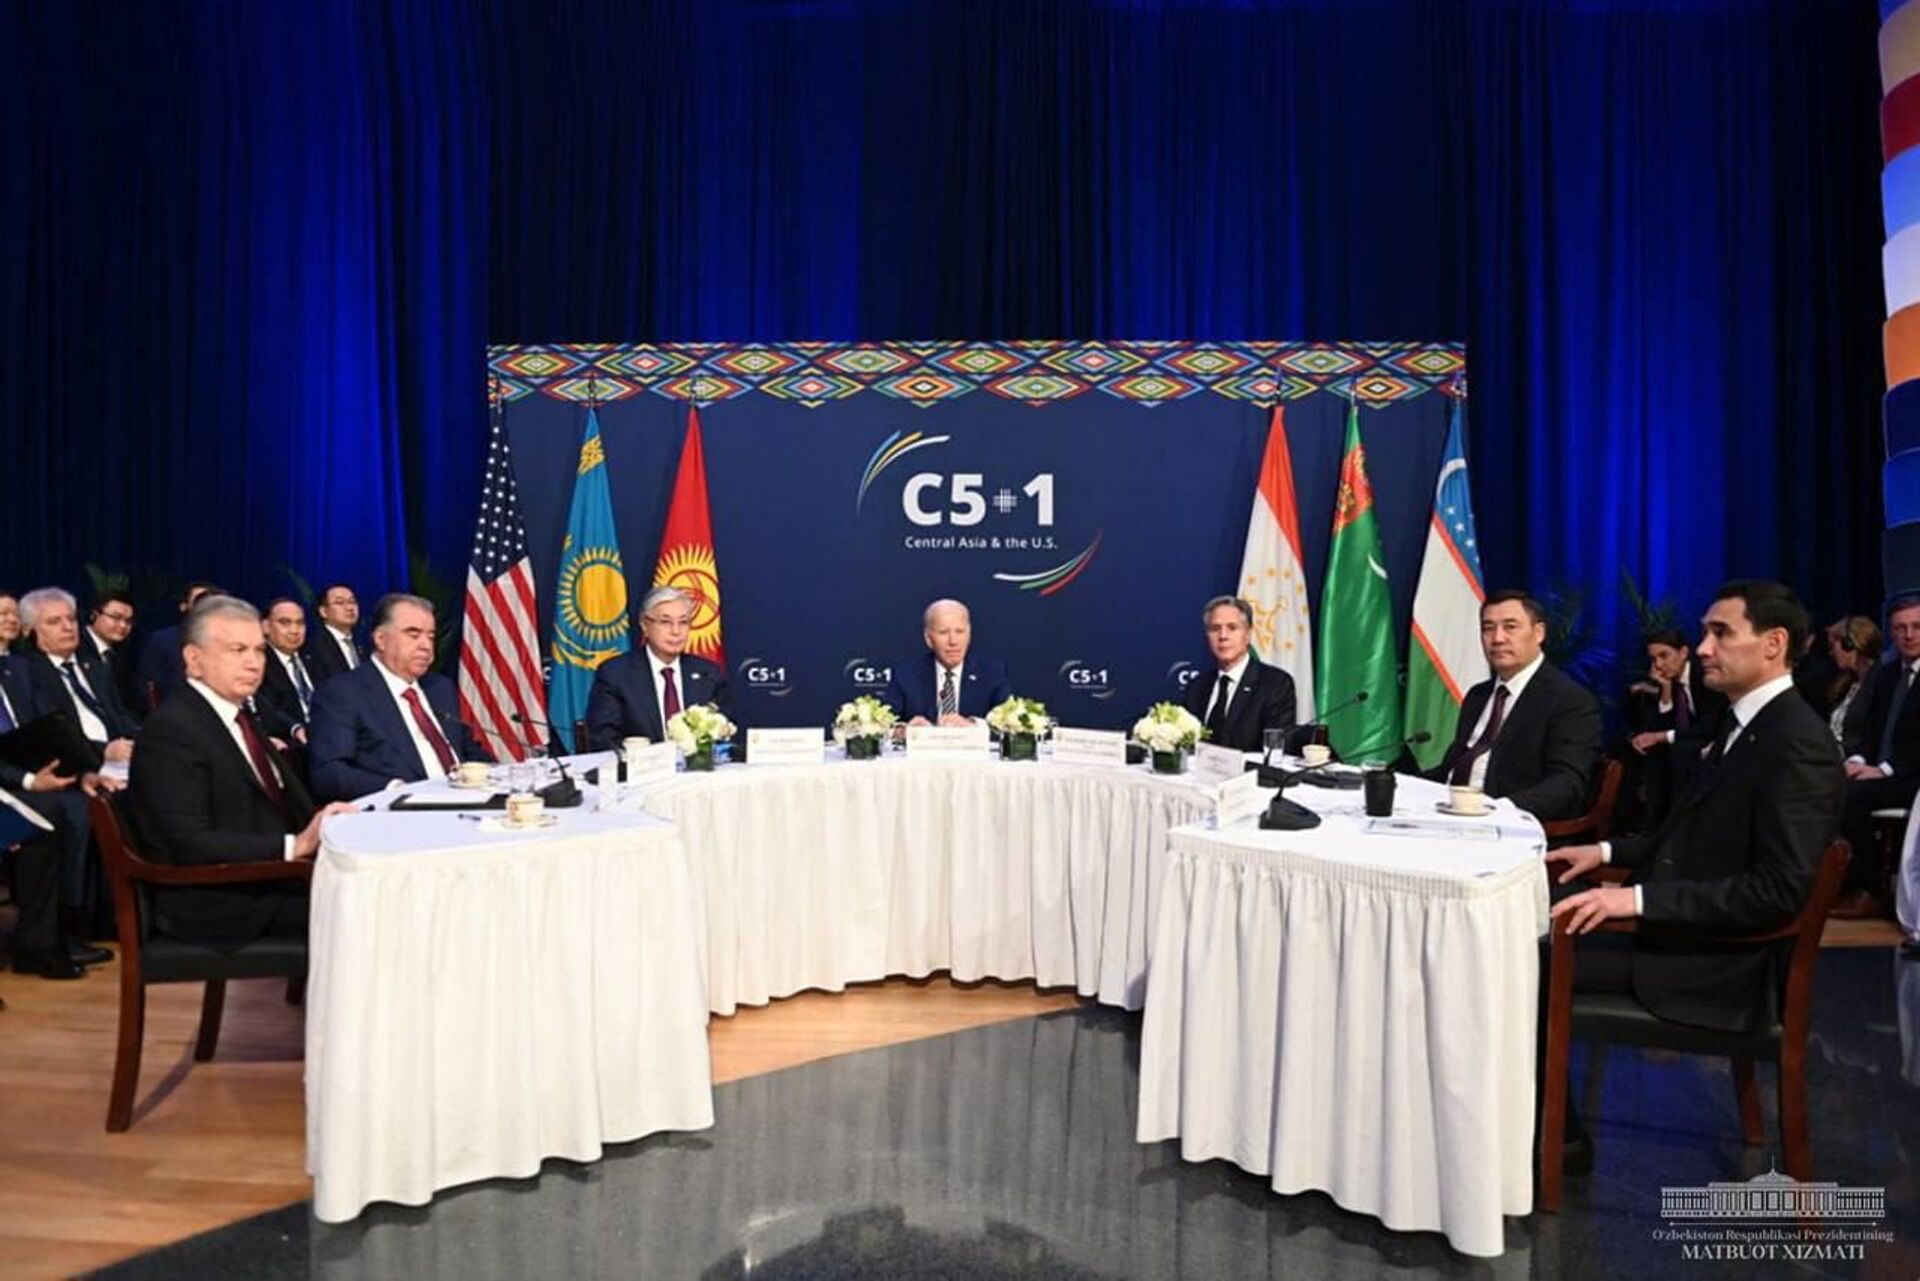 Саммит лидеров стран Центральной Азии и США в формате С5+1. - Sputnik Узбекистан, 1920, 20.09.2023